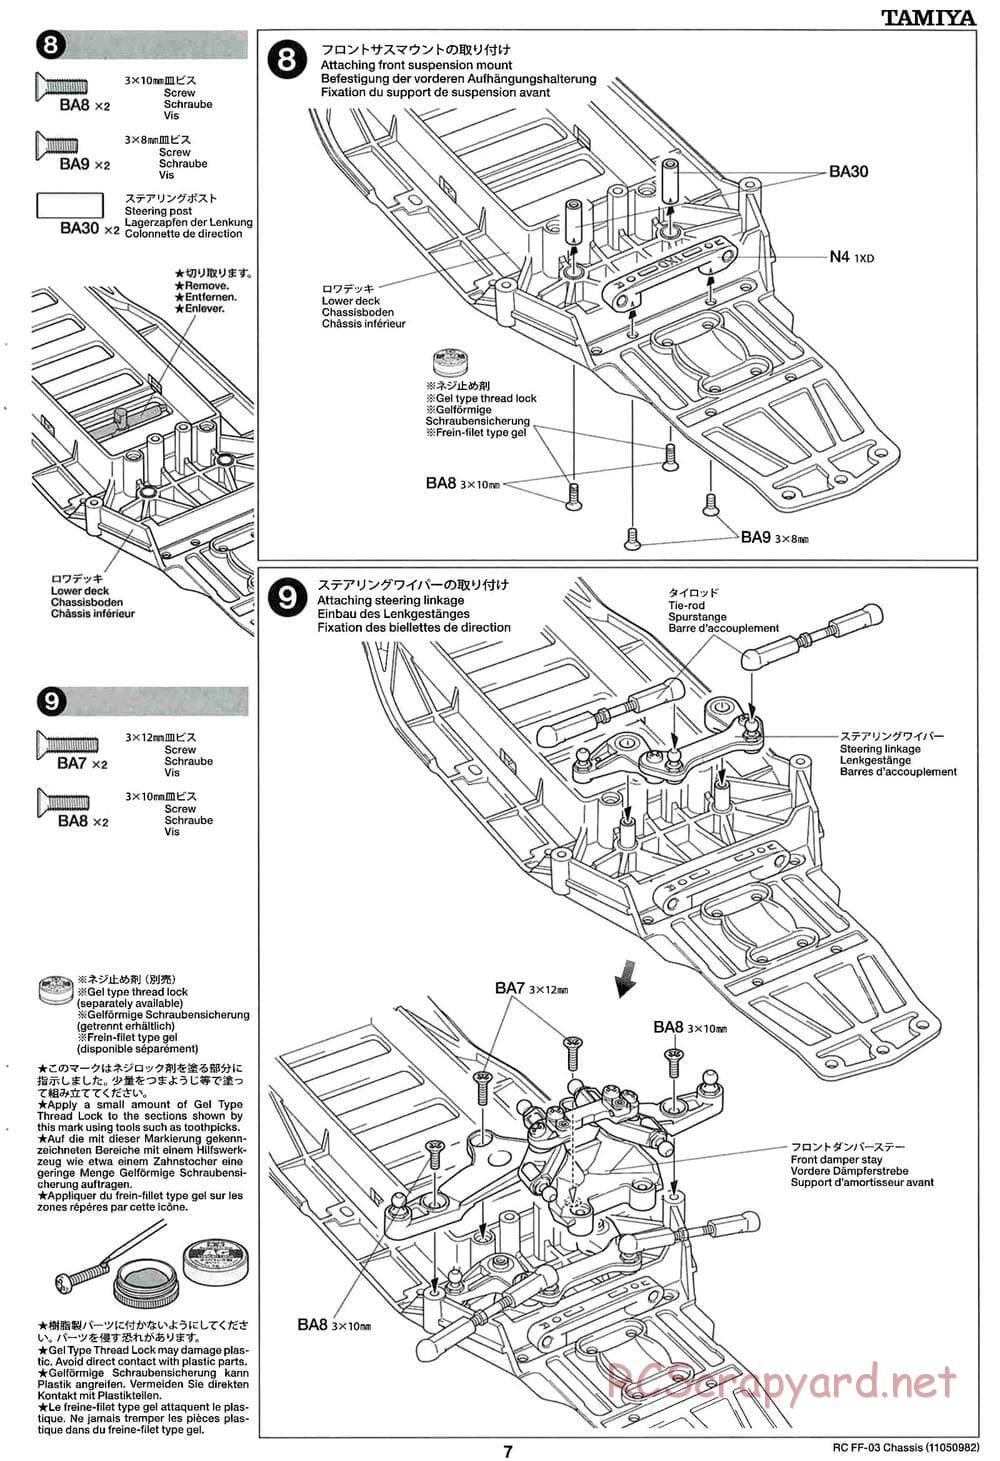 Tamiya - Castrol Honda Civic VTi - FF-03 Chassis - Manual - Page 7